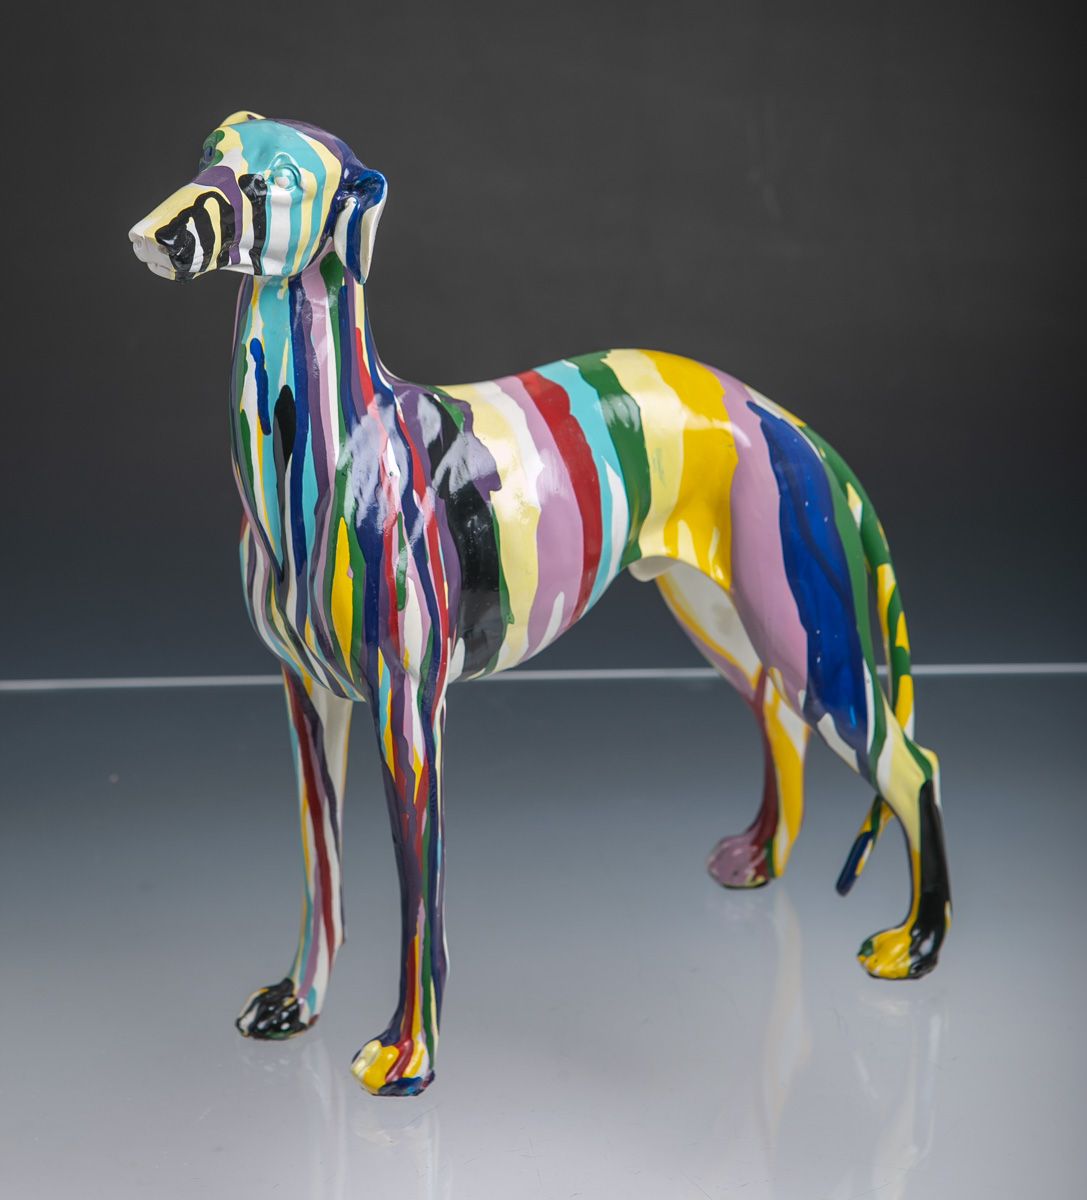 Null 未知艺术家（20/21世纪），多伯曼犬，可能是陶瓷，多色手绘，约29 x 27 x 8厘米。未损坏。